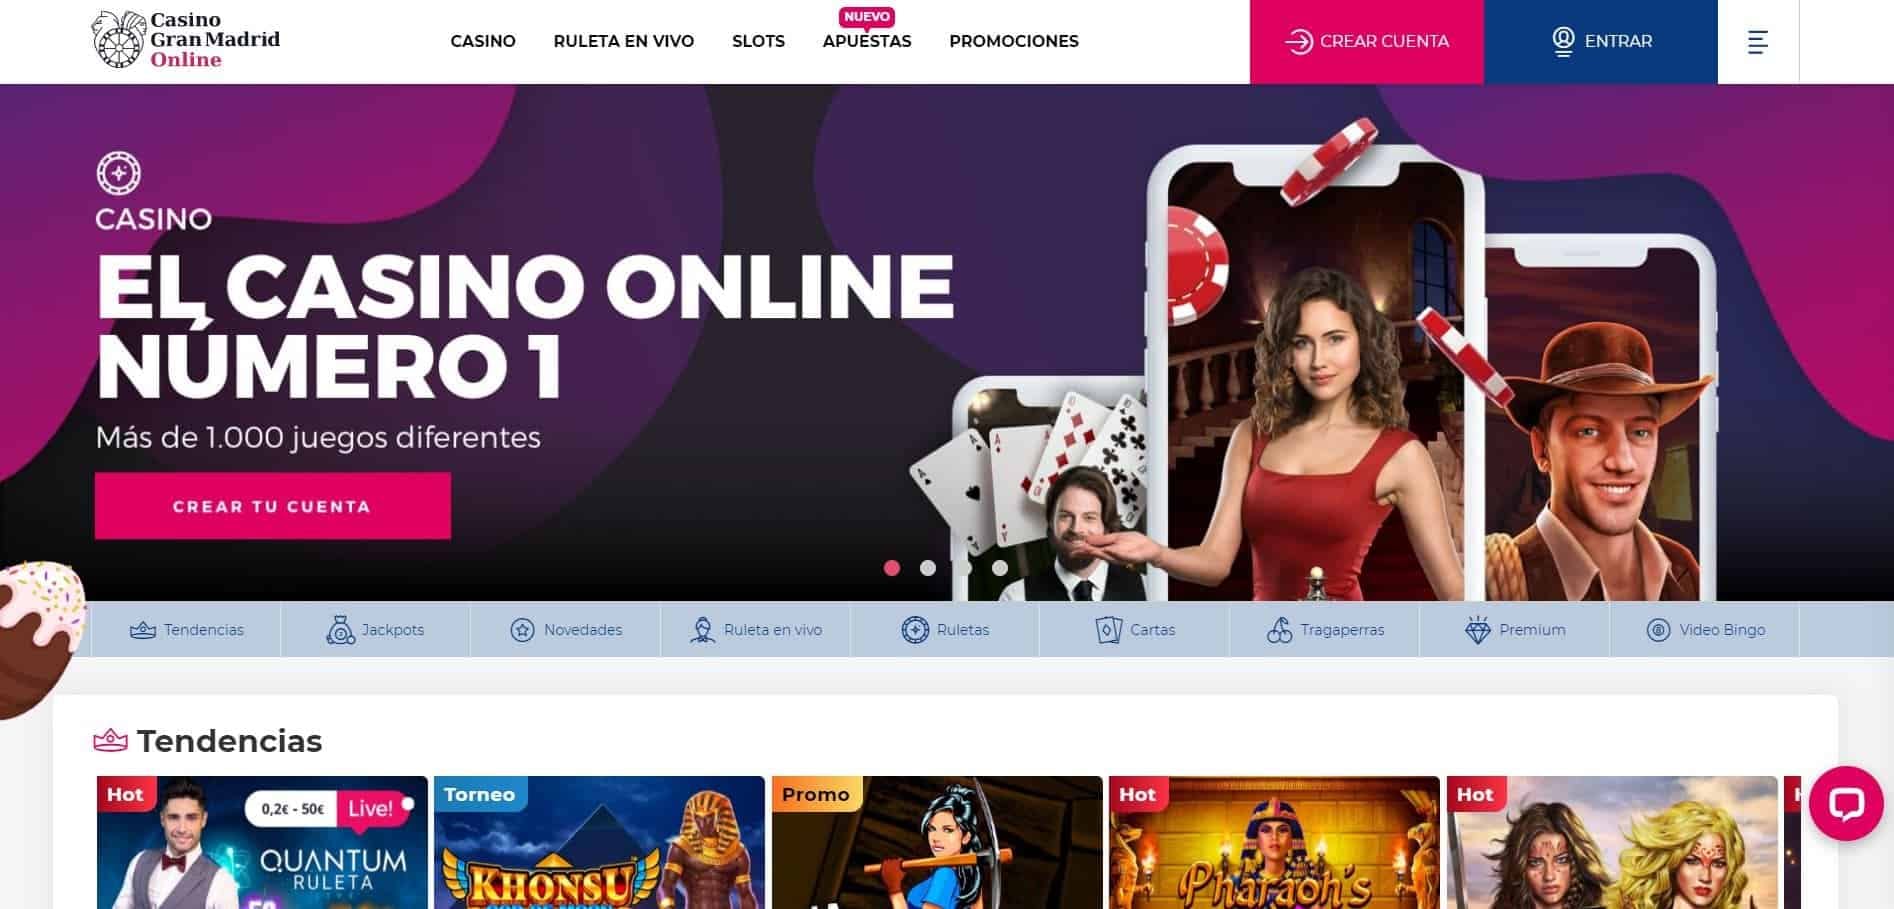 juegos de slot online en Casino Gran Madrid